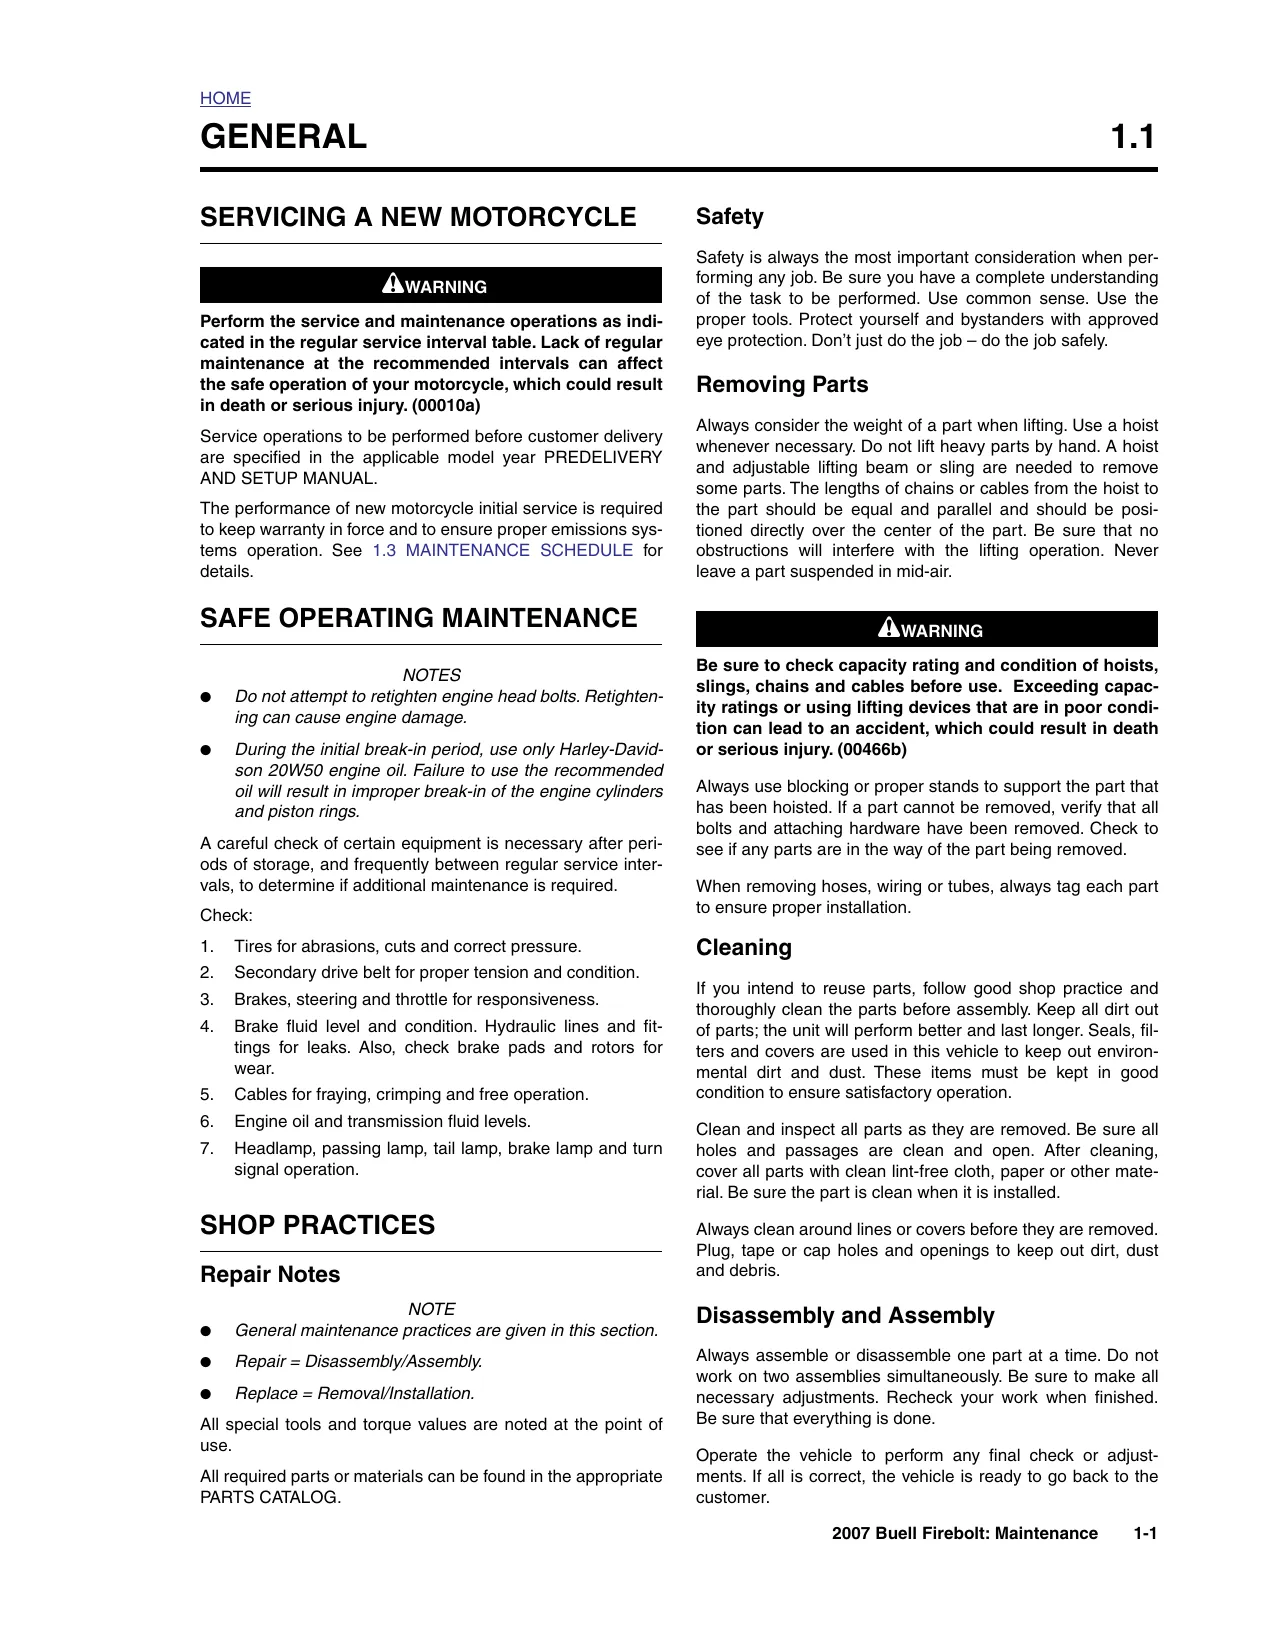 2007 Buell Firebolt XB9R, XB12R repair manual Preview image 1